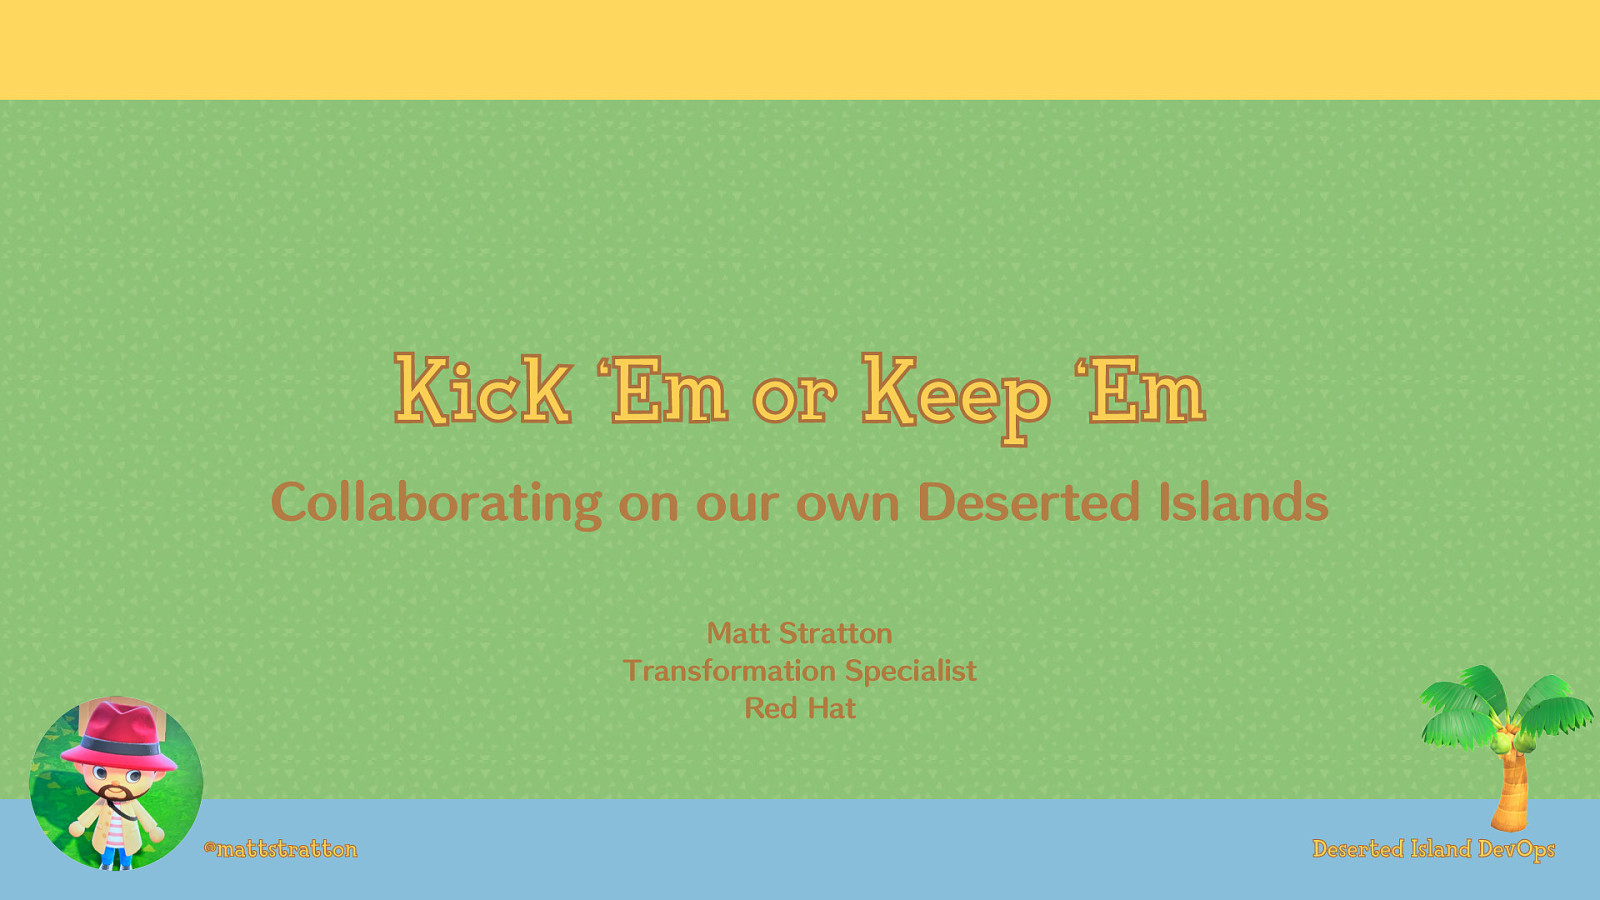 Kick ‘Em or Keep ‘Em - Collaborating on our own Deserted Islands